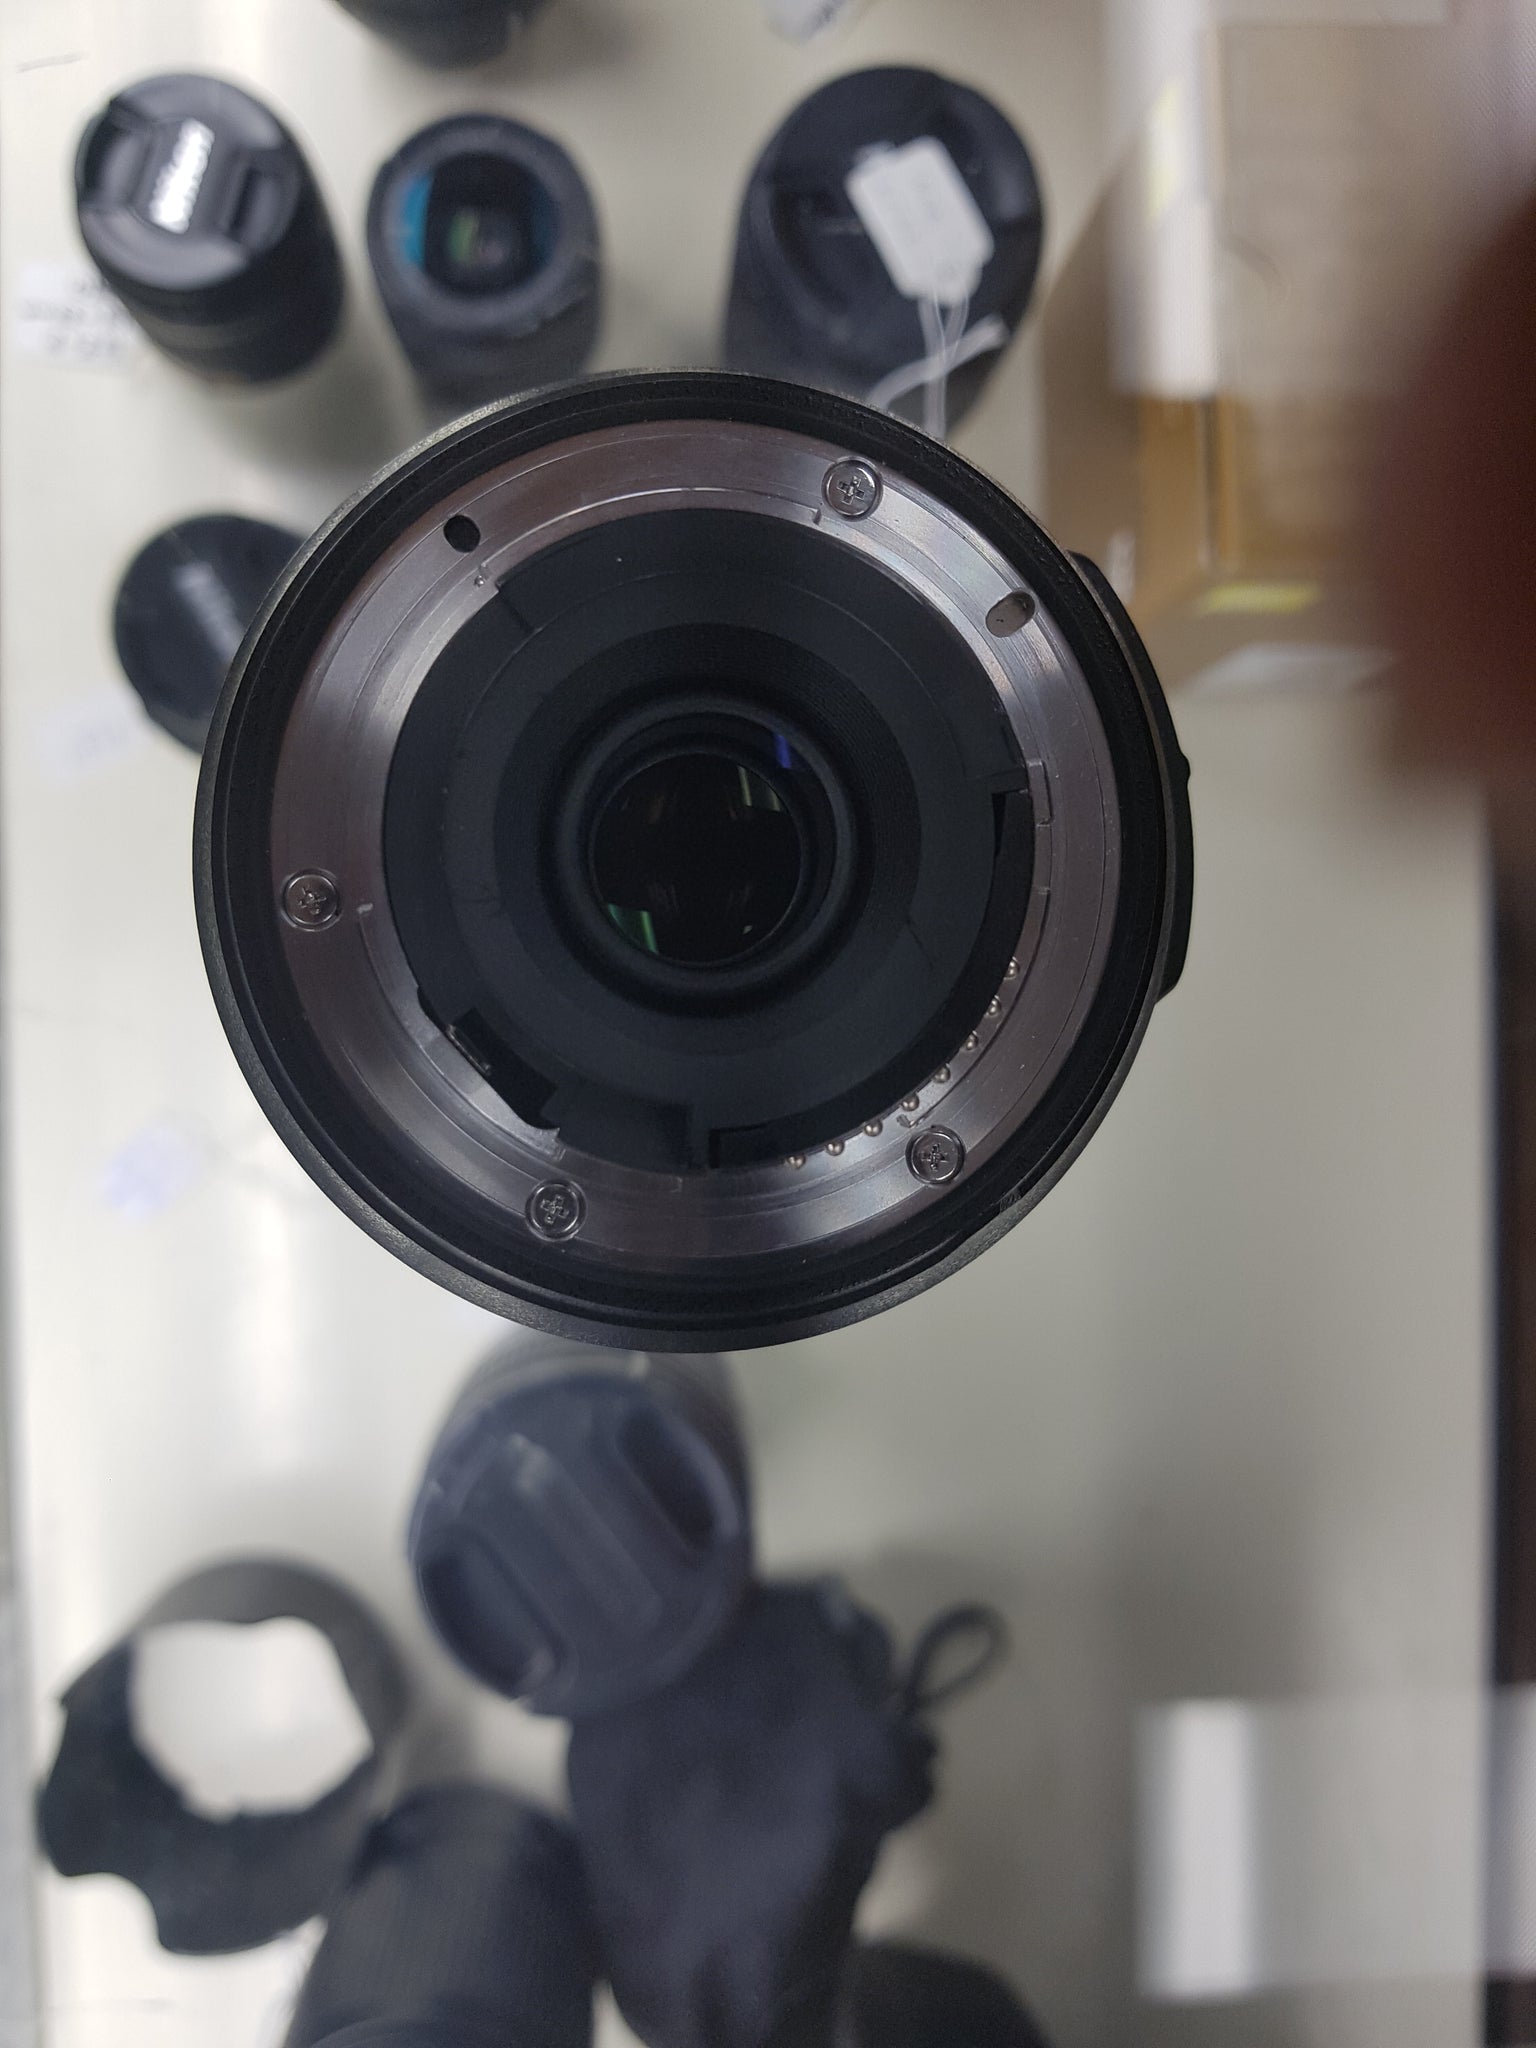 AF-S DX Nikon 55-300mm f/4.5-5.6G ED VR Lens - Used Condition 9.5